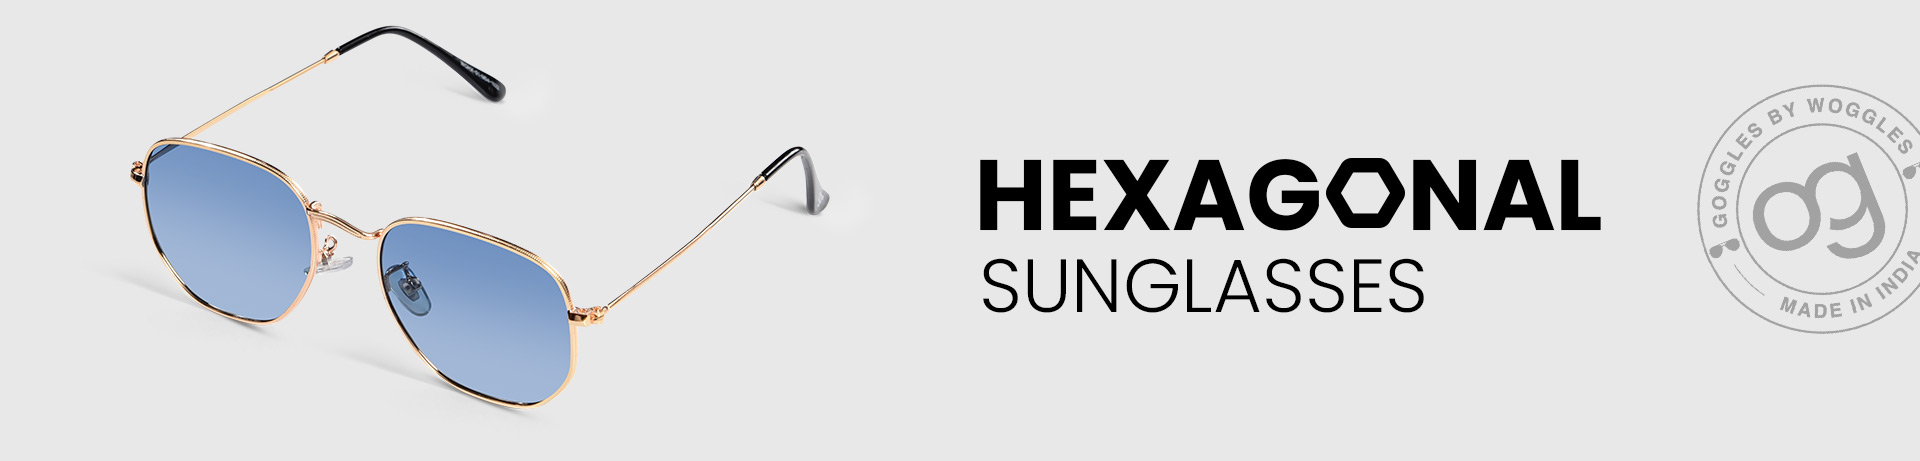 Hexagonal Sunglasses for Men